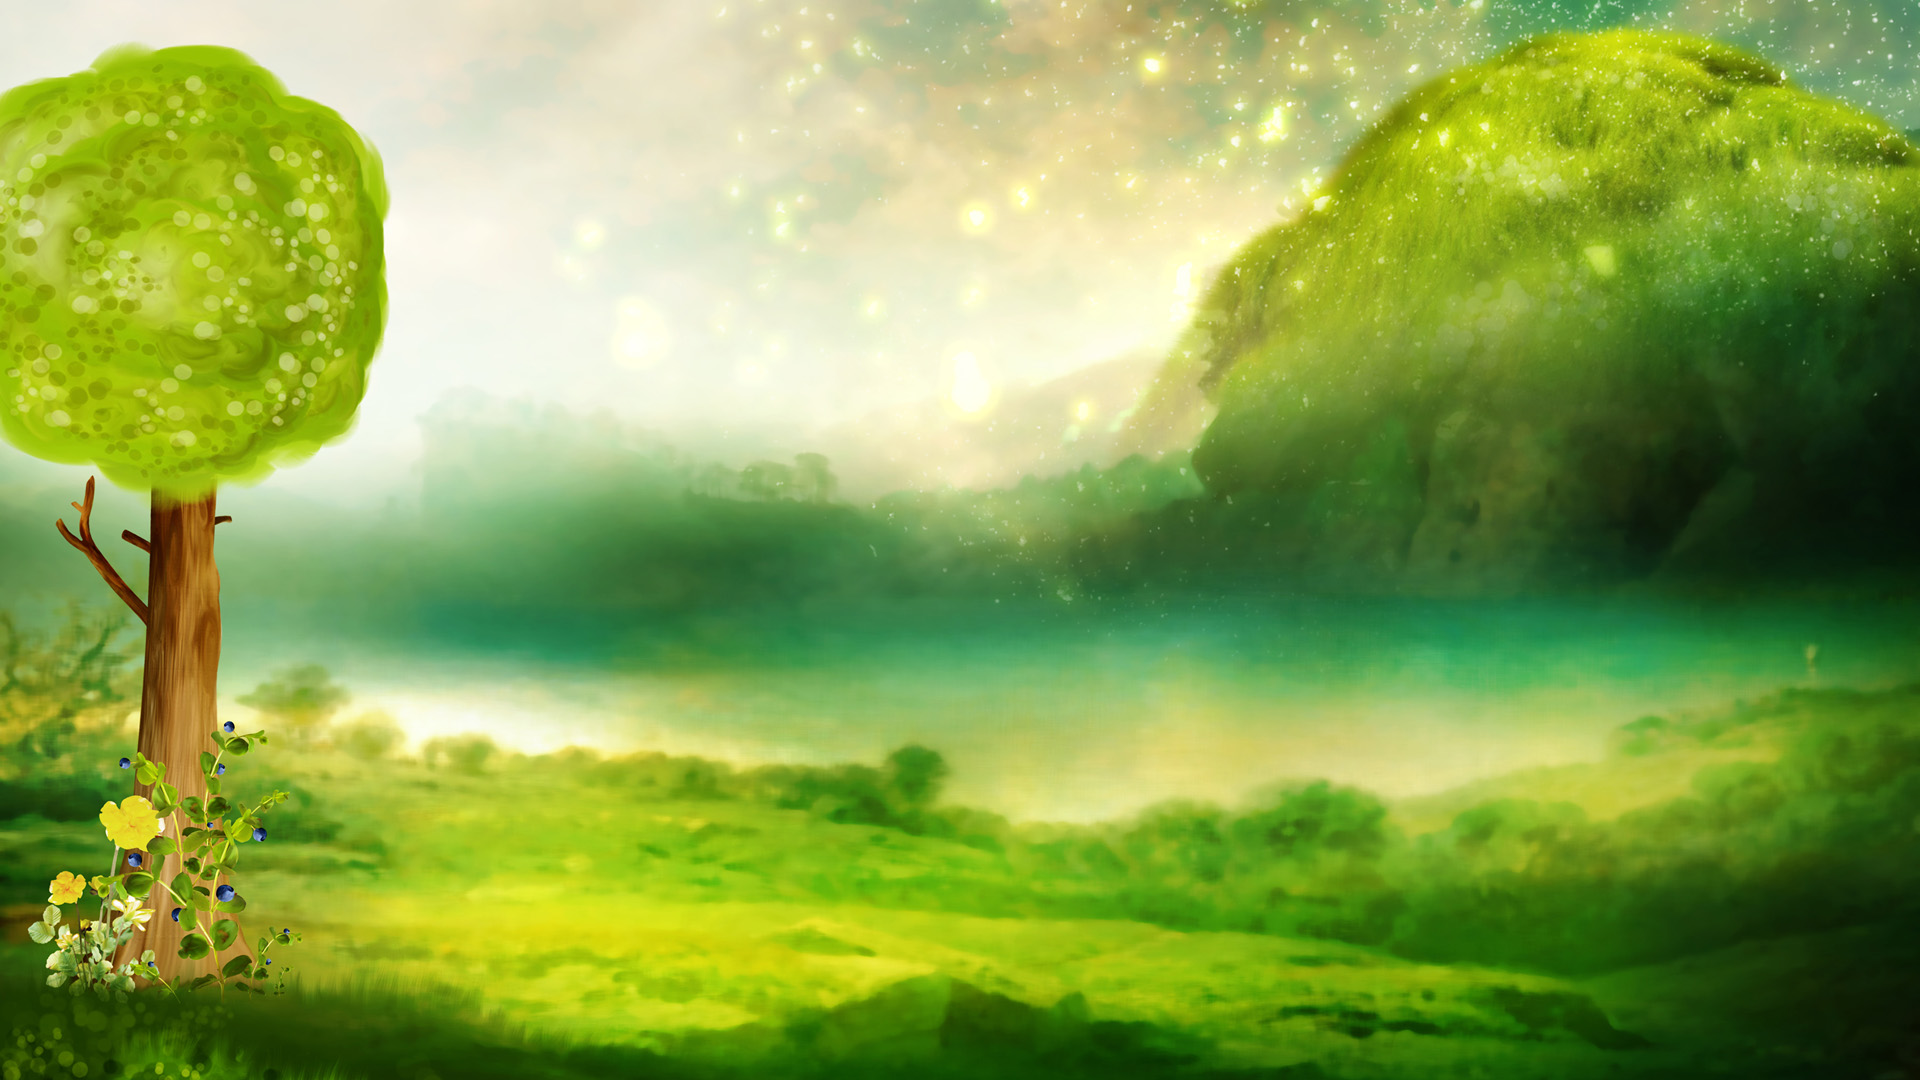 2013年梦幻手绘绿色风景桌面壁纸